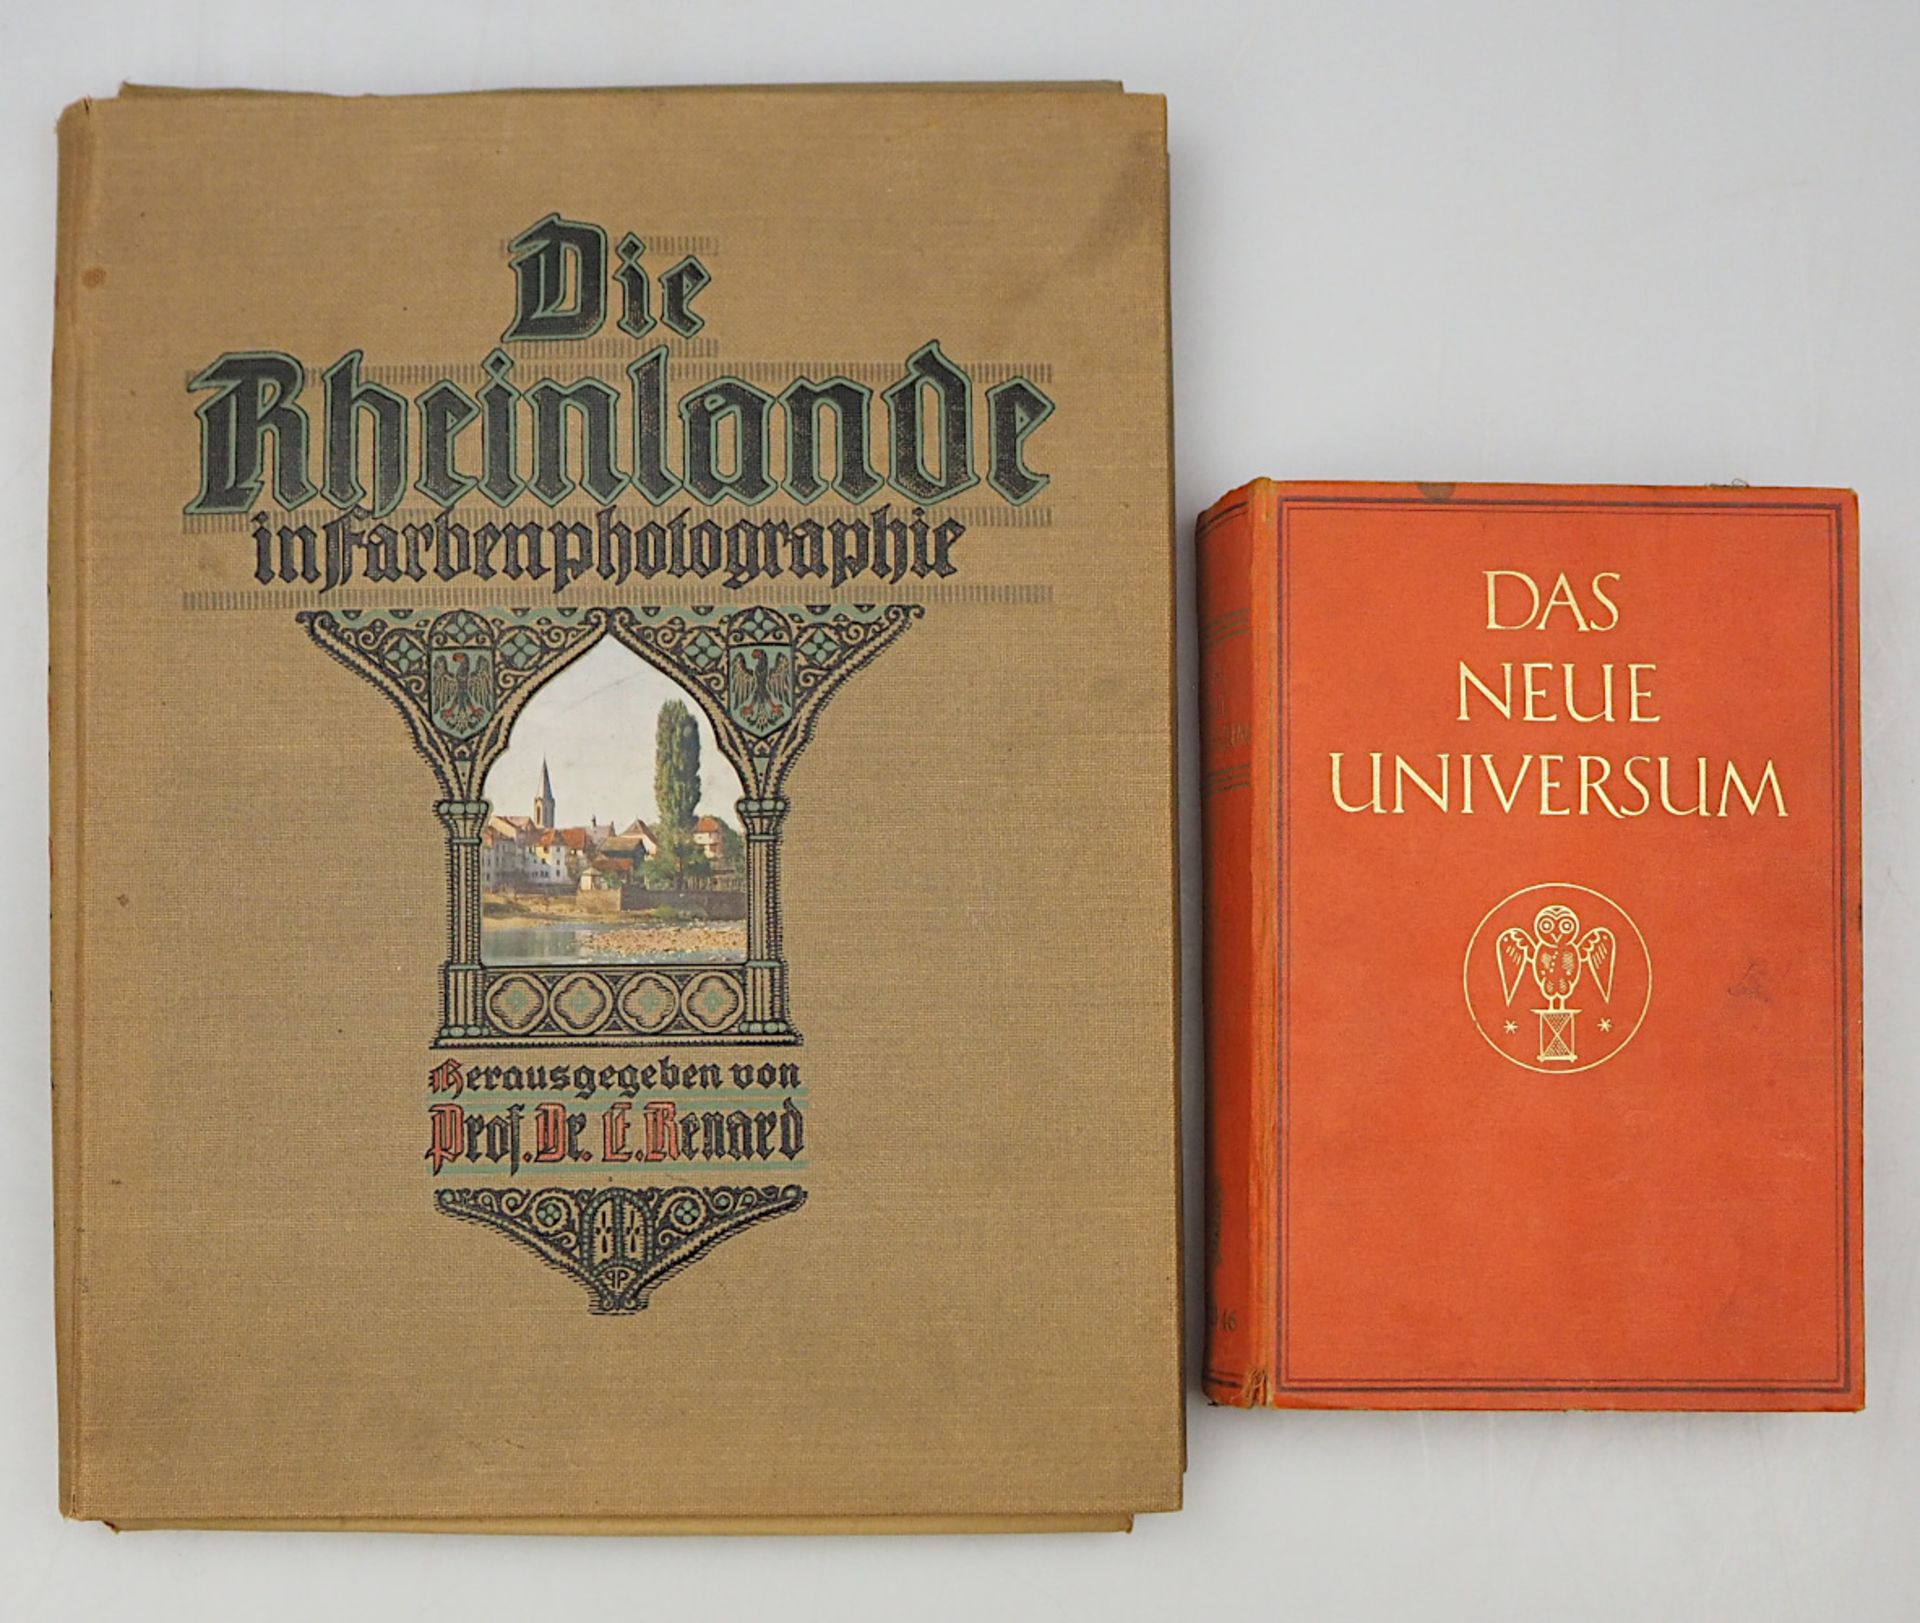 1 Konv. Bücher: "Die Rheinlande in Farbenphotographie", Köln 1922"Das Neue Universum